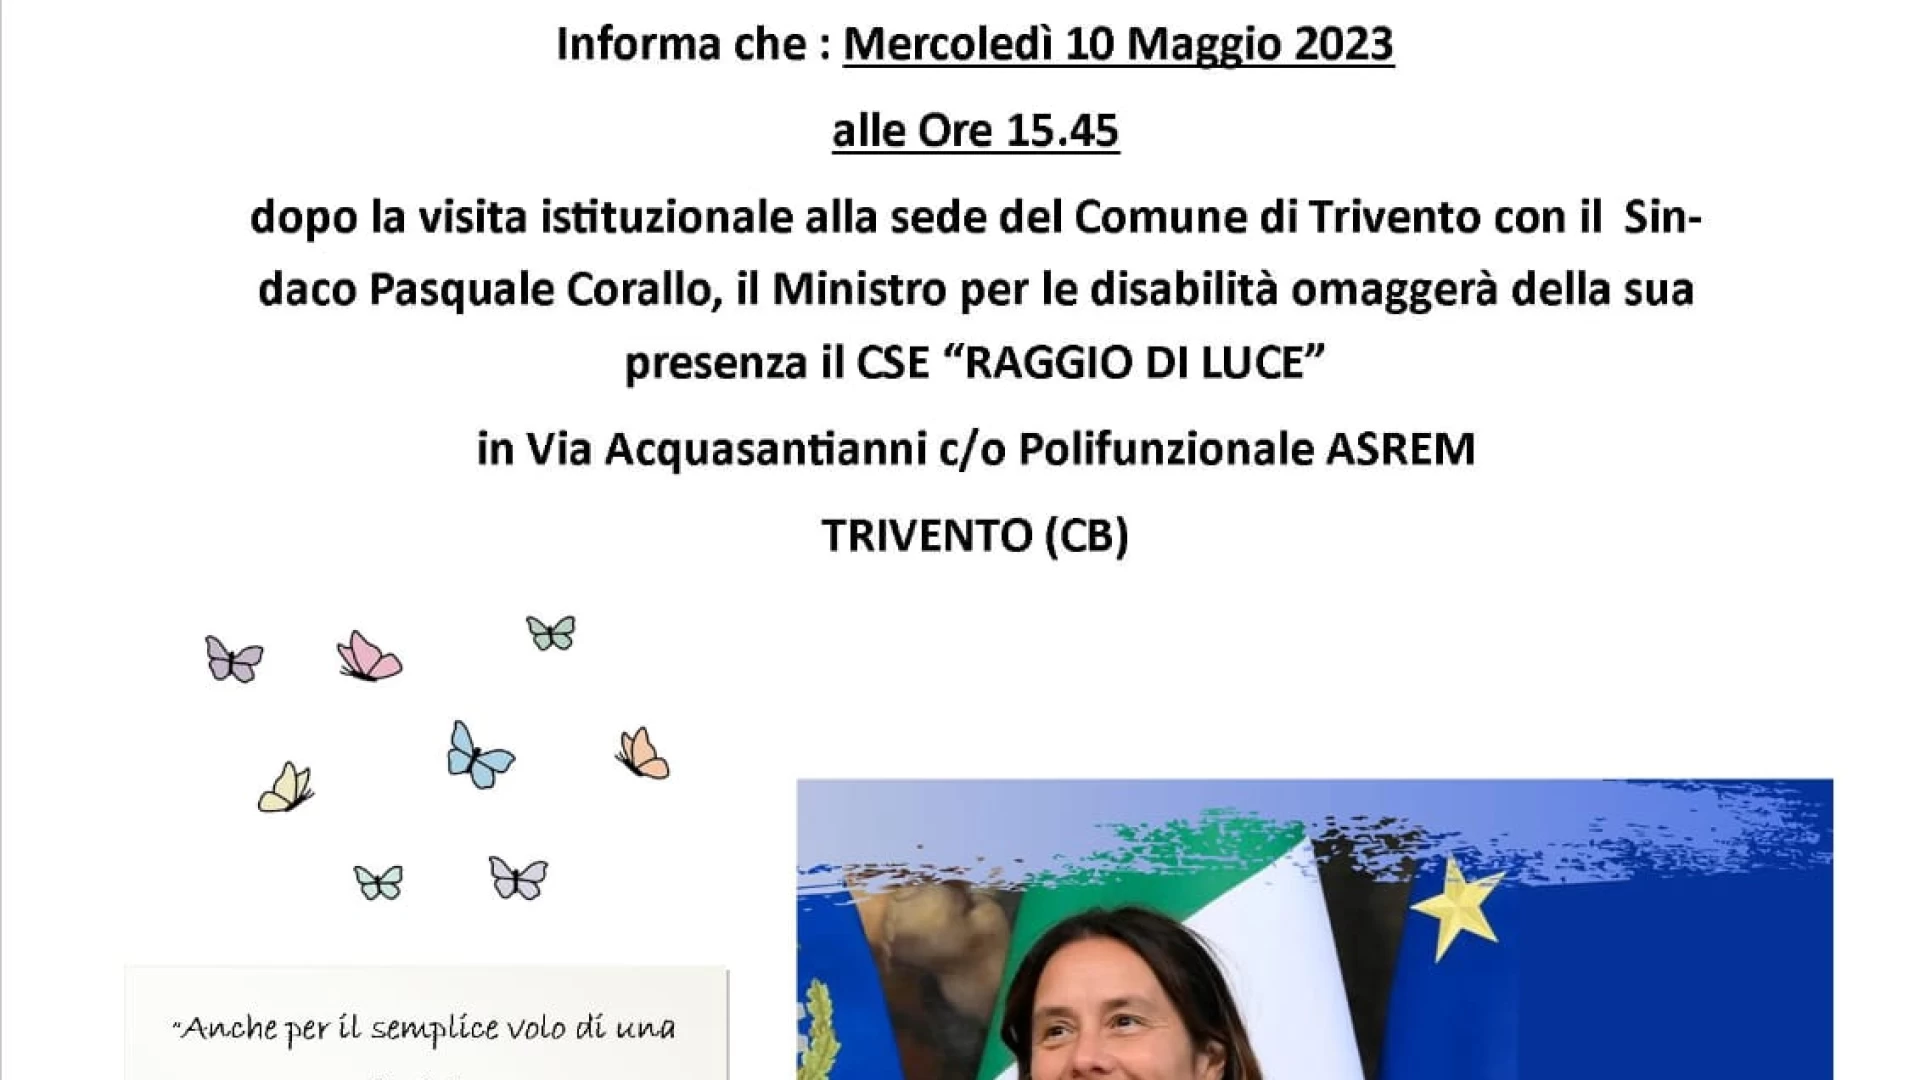 Trivento: il Ministro per le disabilità Alessandra Locatelli farà visita all'Organizzazione di Volontariato "Cielo e Terra"